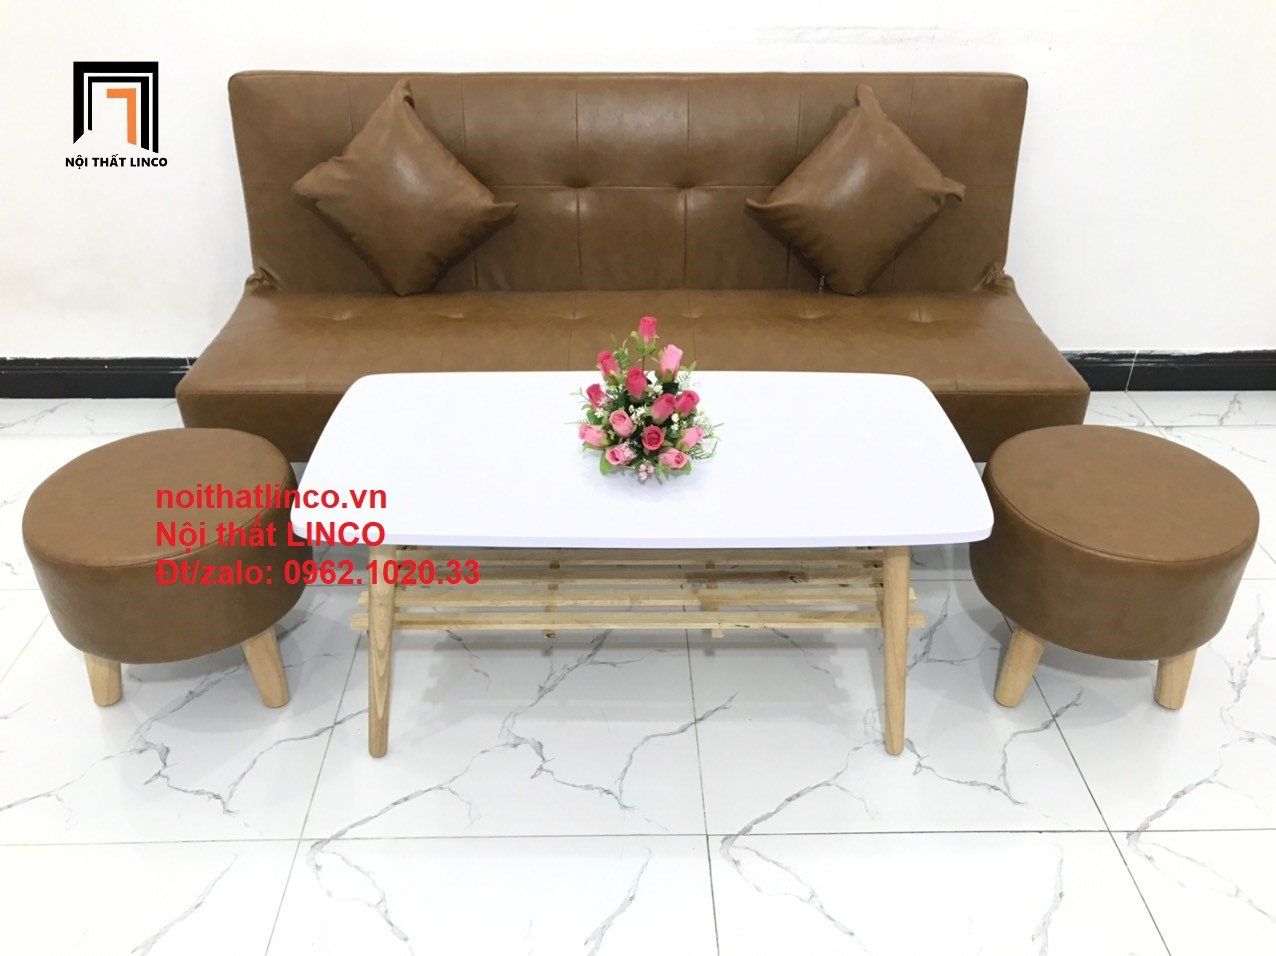  Bộ ghế sofa giường đa năng SFG dài 1m7 simili giả da màu da bò 